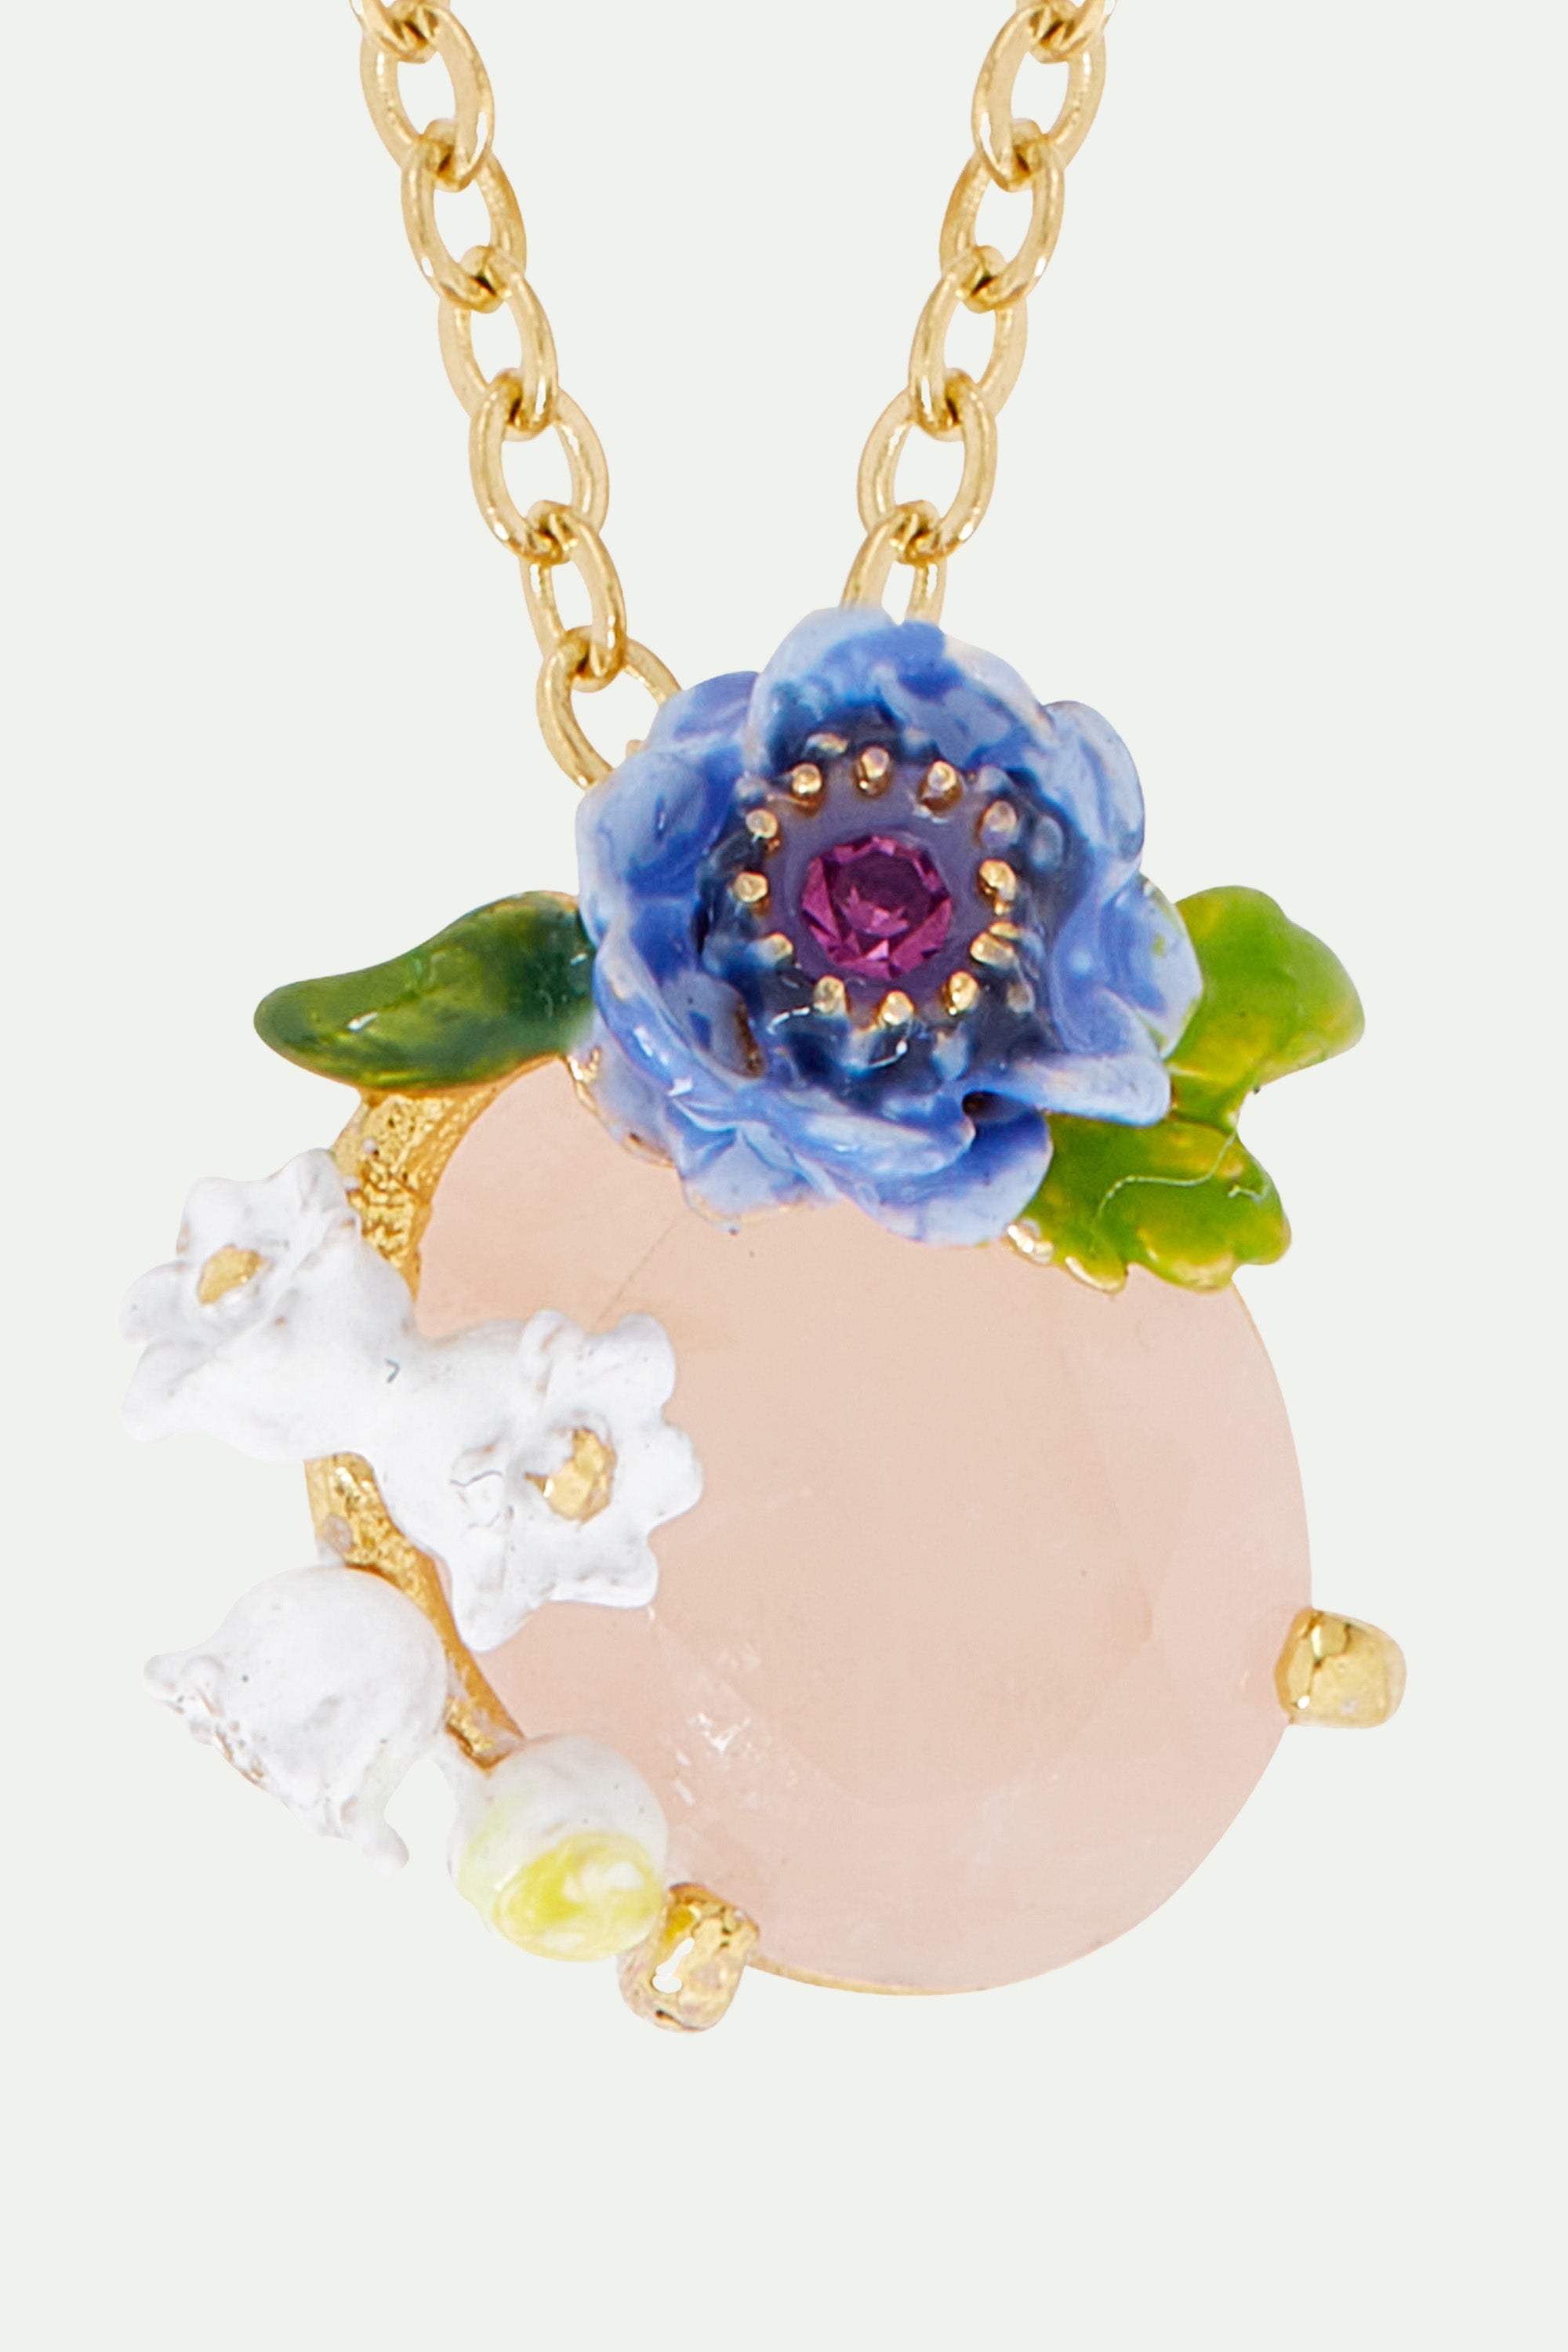 Rose quartz and floral composition pendant necklace